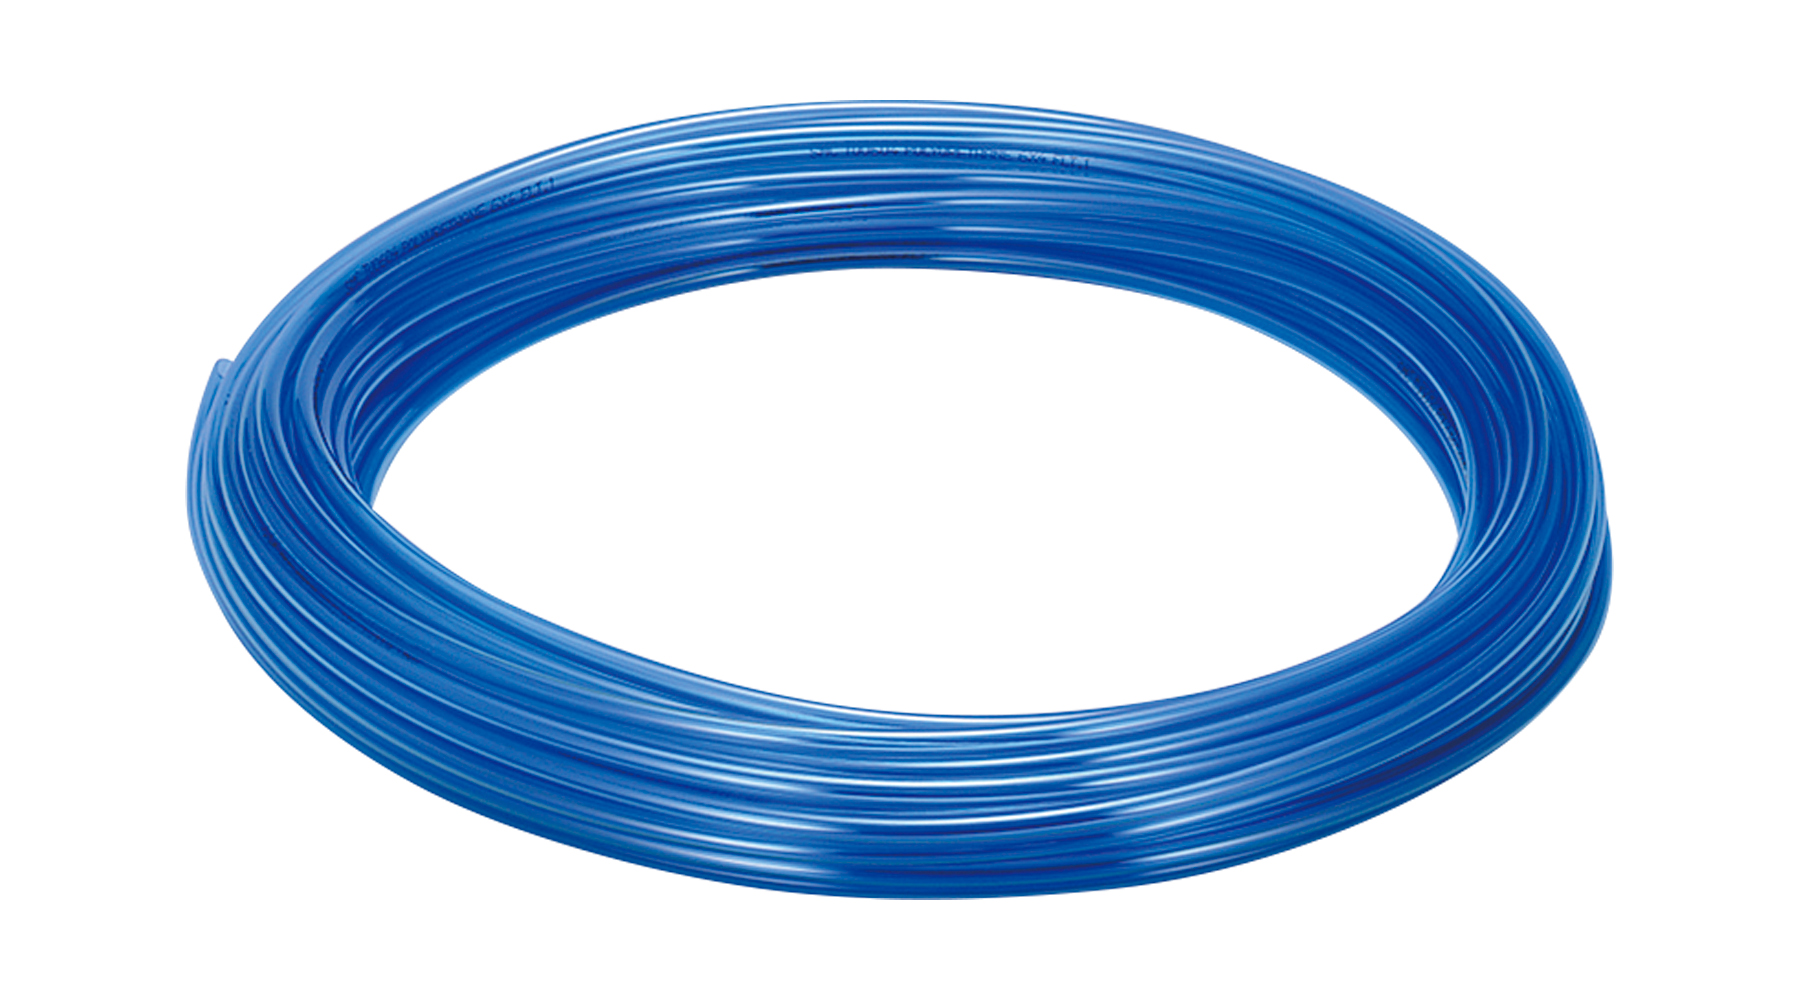 POLYURETHANE TUBE(BLUE)